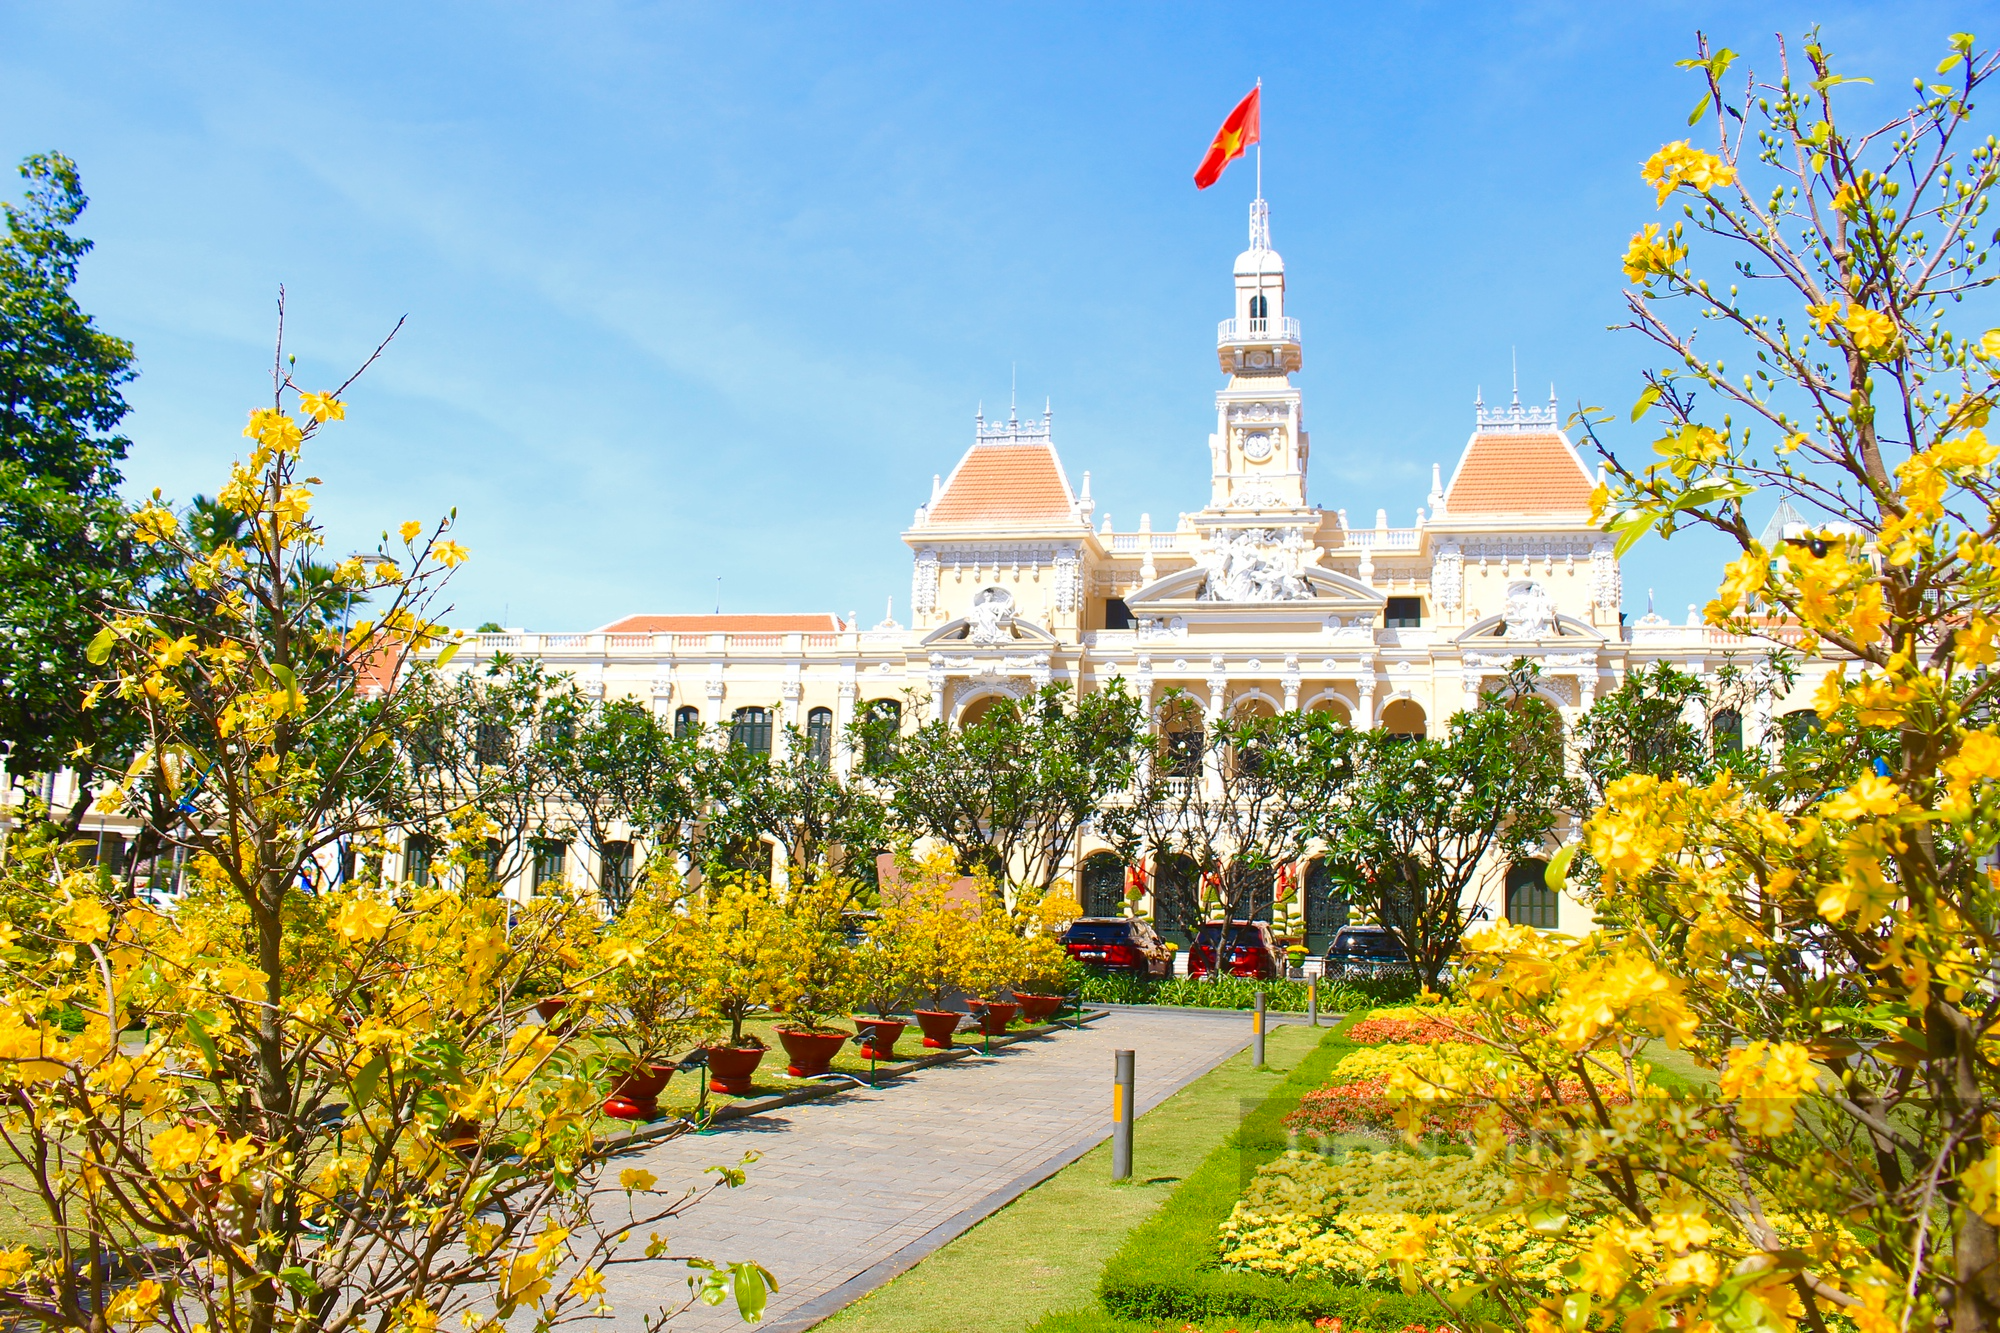 Rừng mai vàng rực rỡ giữa trung tâm Sài Gòn, người dân đổ về chụp ảnh mùng 3 Tết - Ảnh 1.